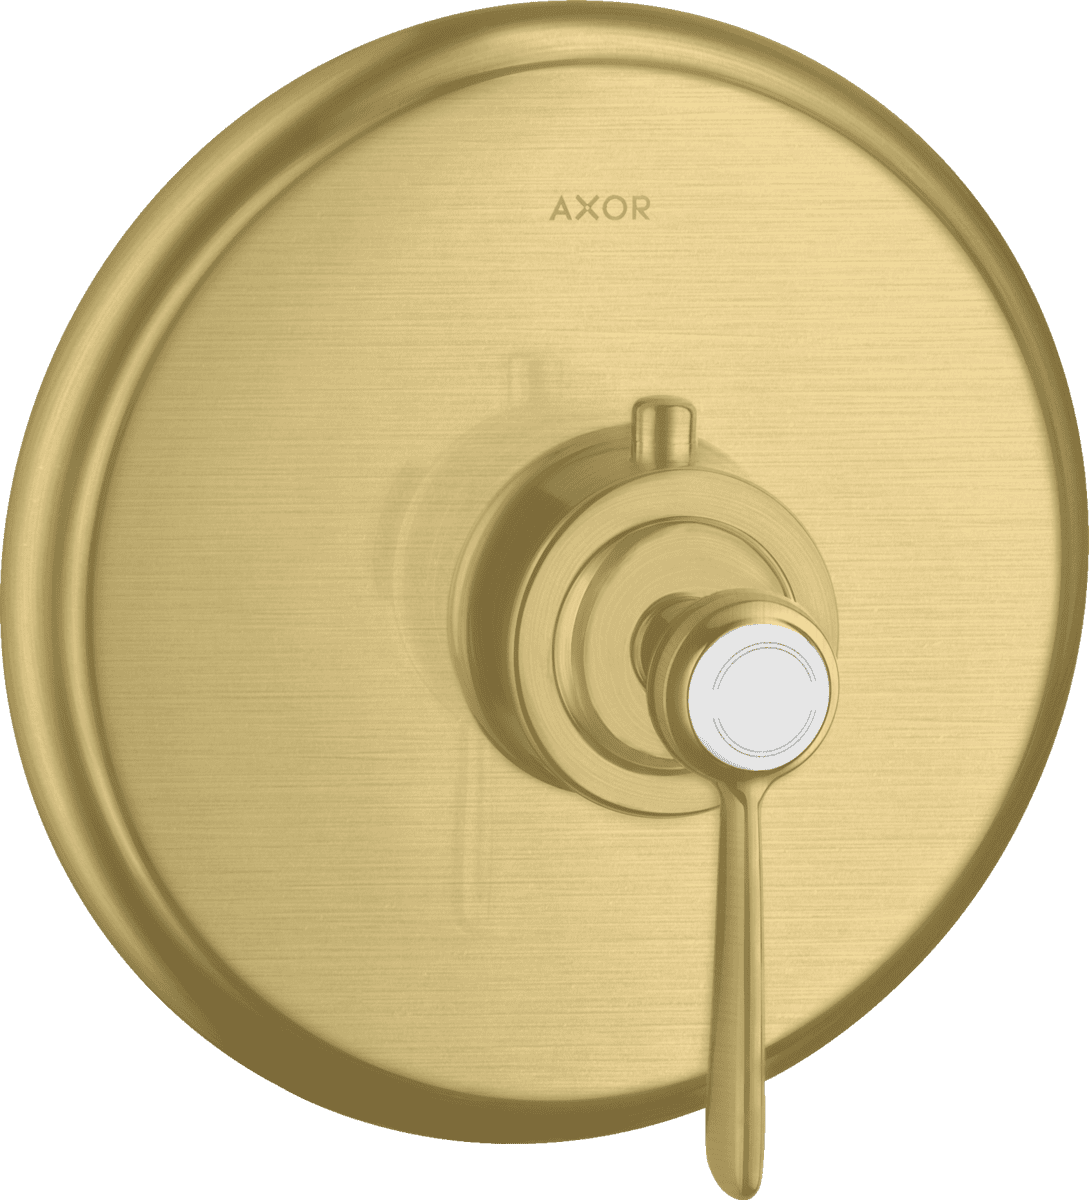 Bild von HANSGROHE AXOR Montreux Thermostat HighFlow Unterputz mit Hebelgriff #16824950 - Brushed Brass